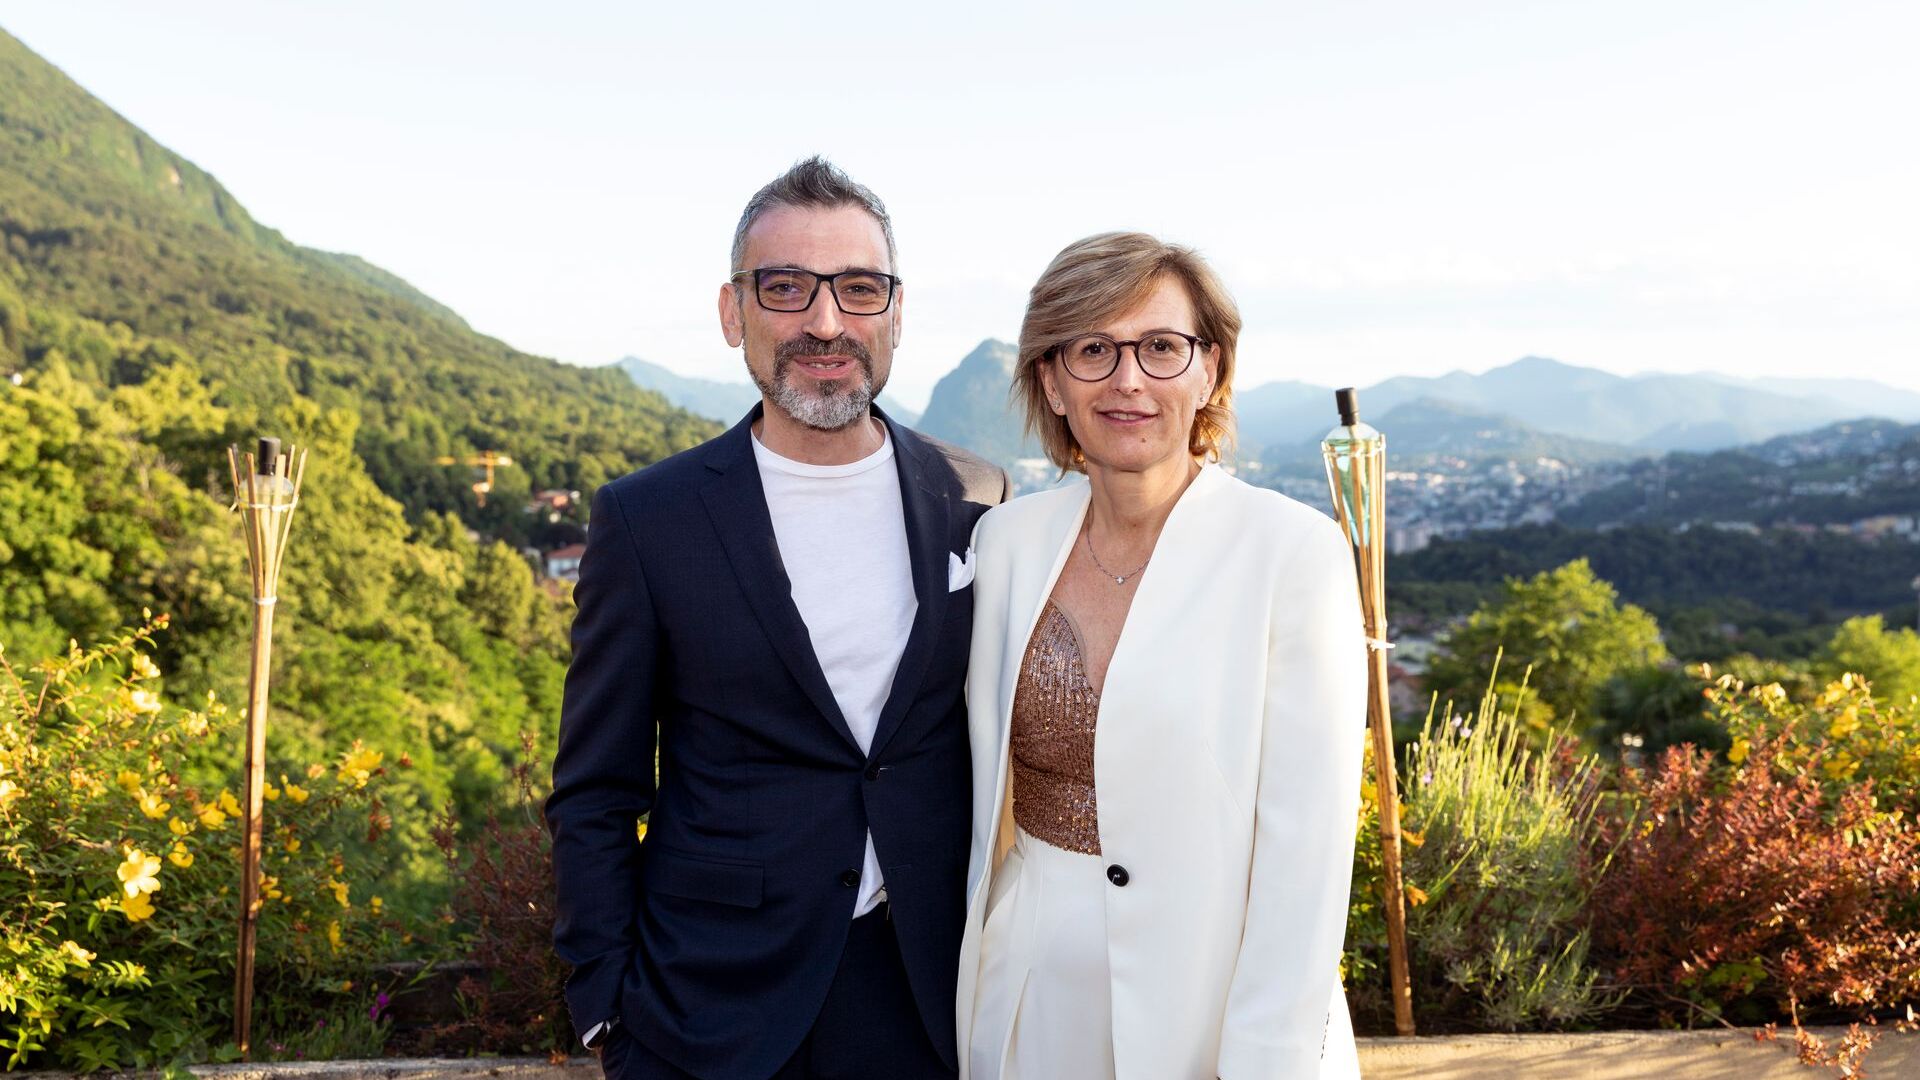 Cristina Giotto, predsjednica, i Luca Mauriello, potpredsjednik, utjelovljuju novi top menadžment ated-ICT Ticina